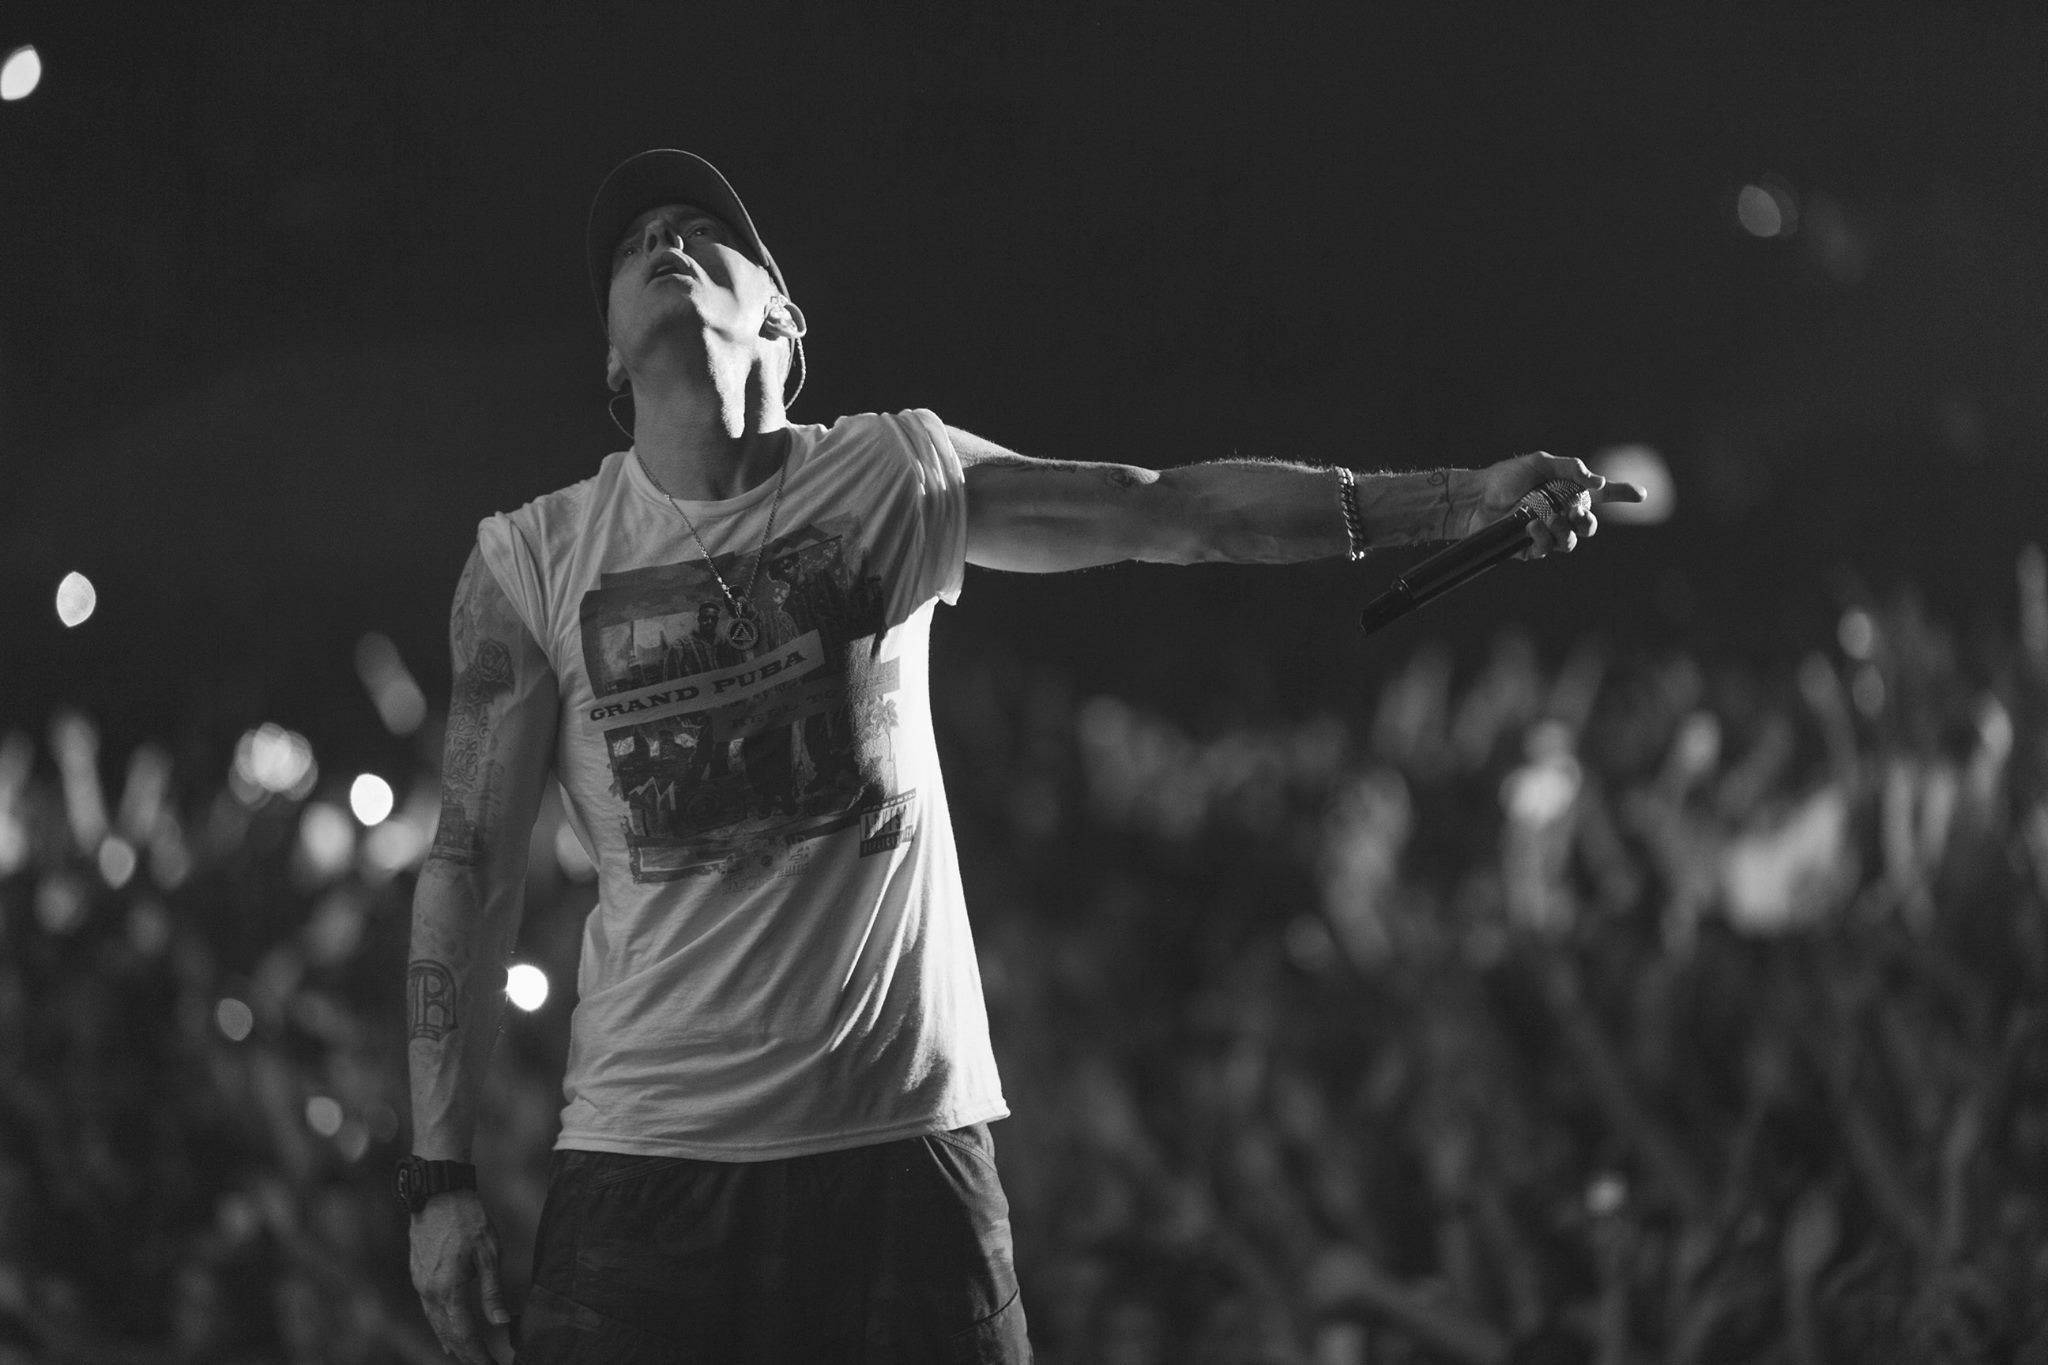 Eminem 2016 Concert Wallpapers